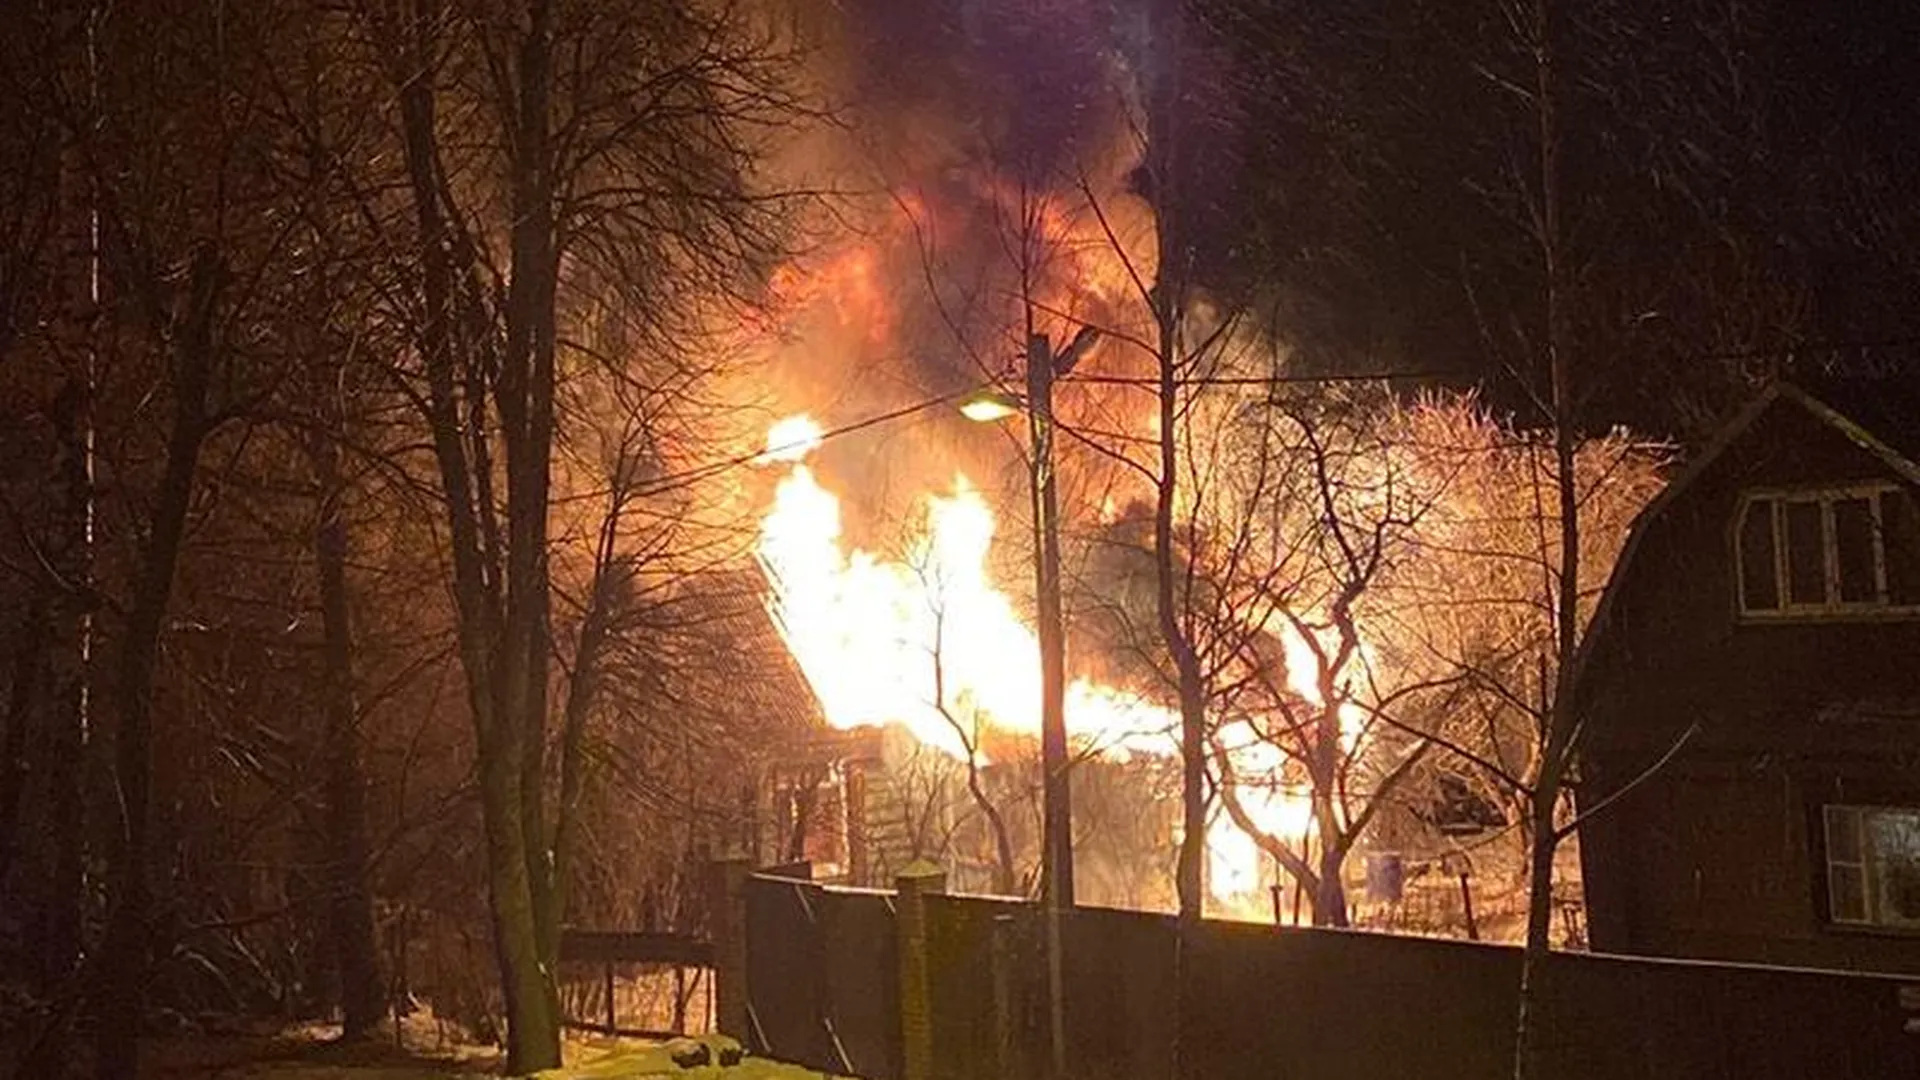 Наружная гирлянда спалила двухэтажный коттедж в Хотьково